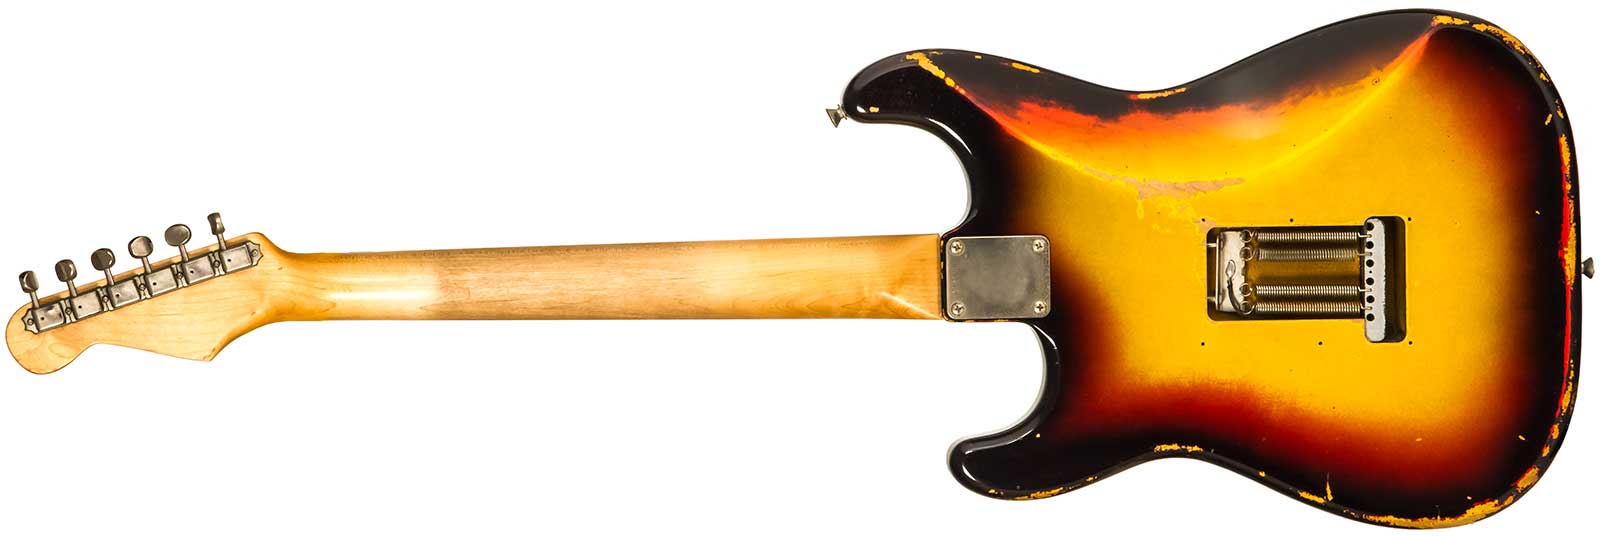 Rebelrelic S-series 1962 3s Trem Rw #231009 - 3-tone Sunburst - Elektrische gitaar in Str-vorm - Variation 1